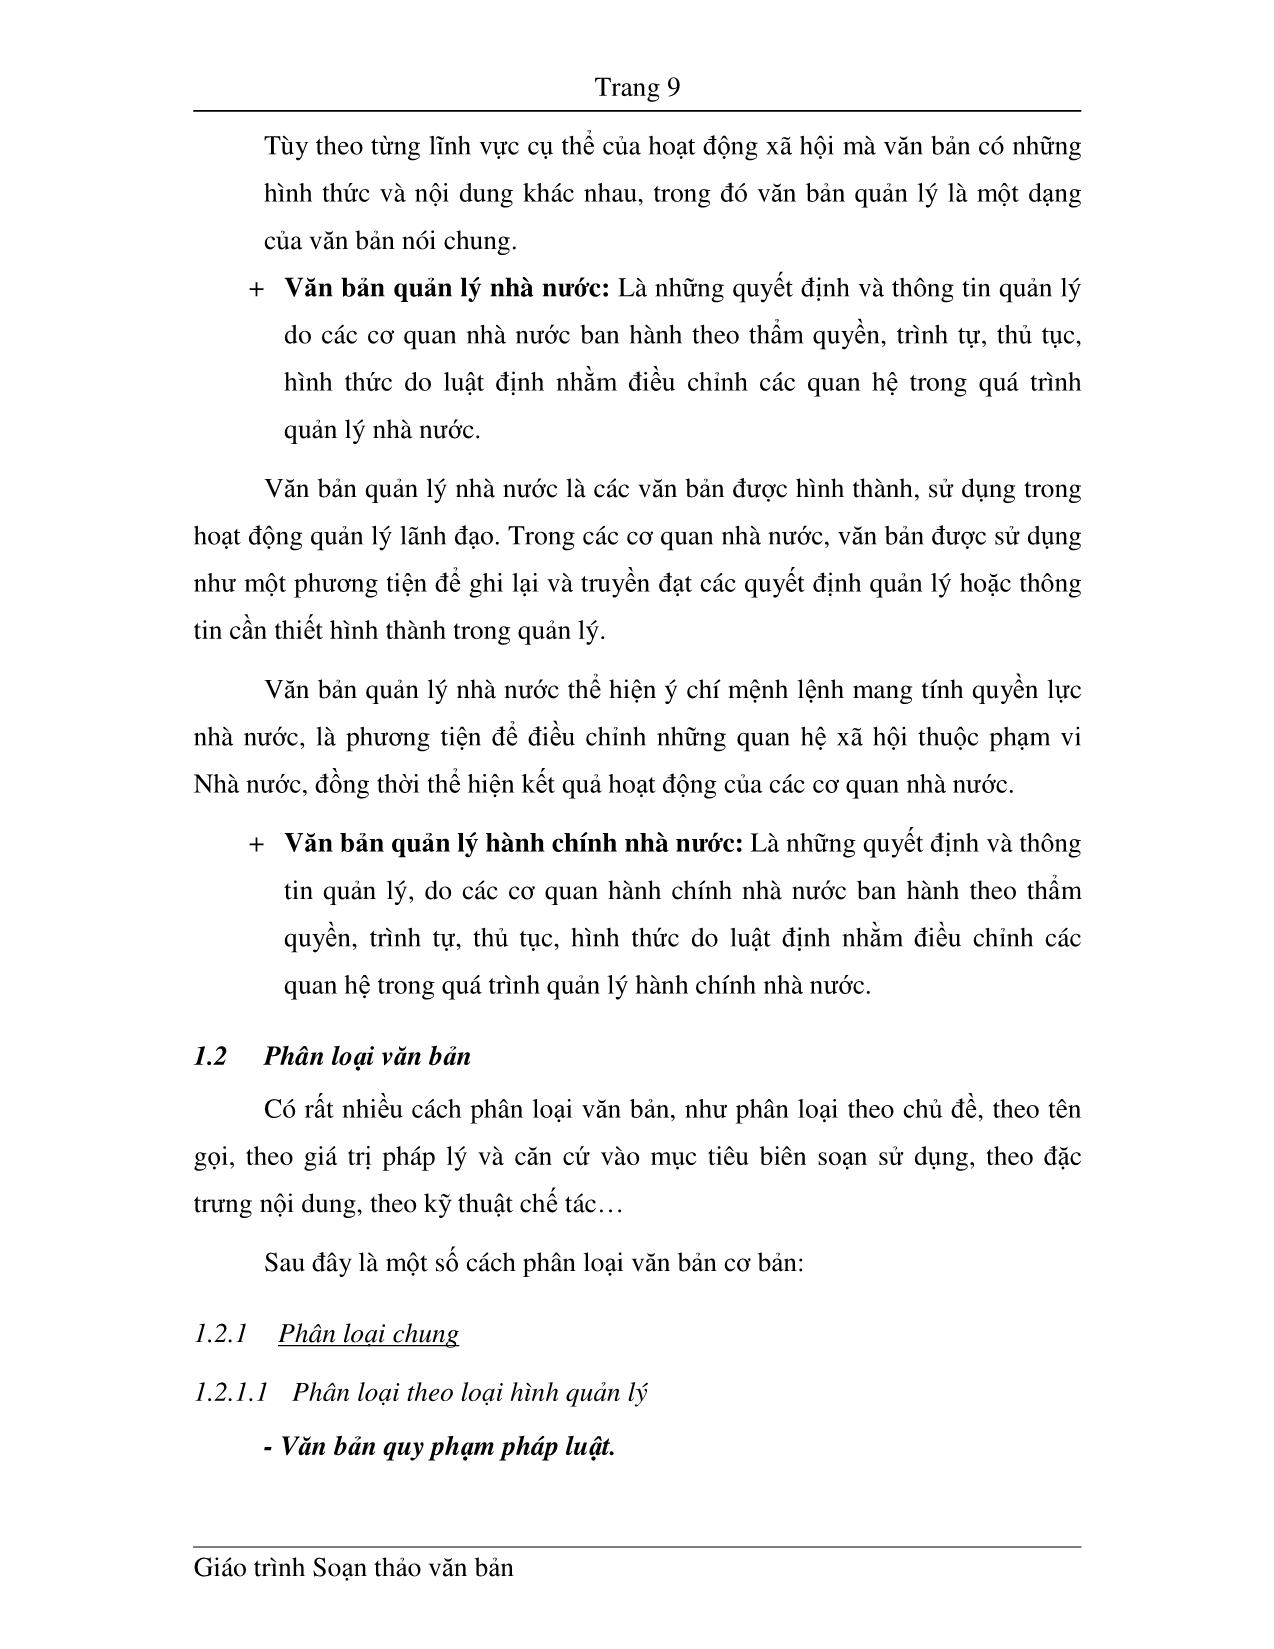 Giáo trình Soạn thảo văn bản (Phần 1) trang 9